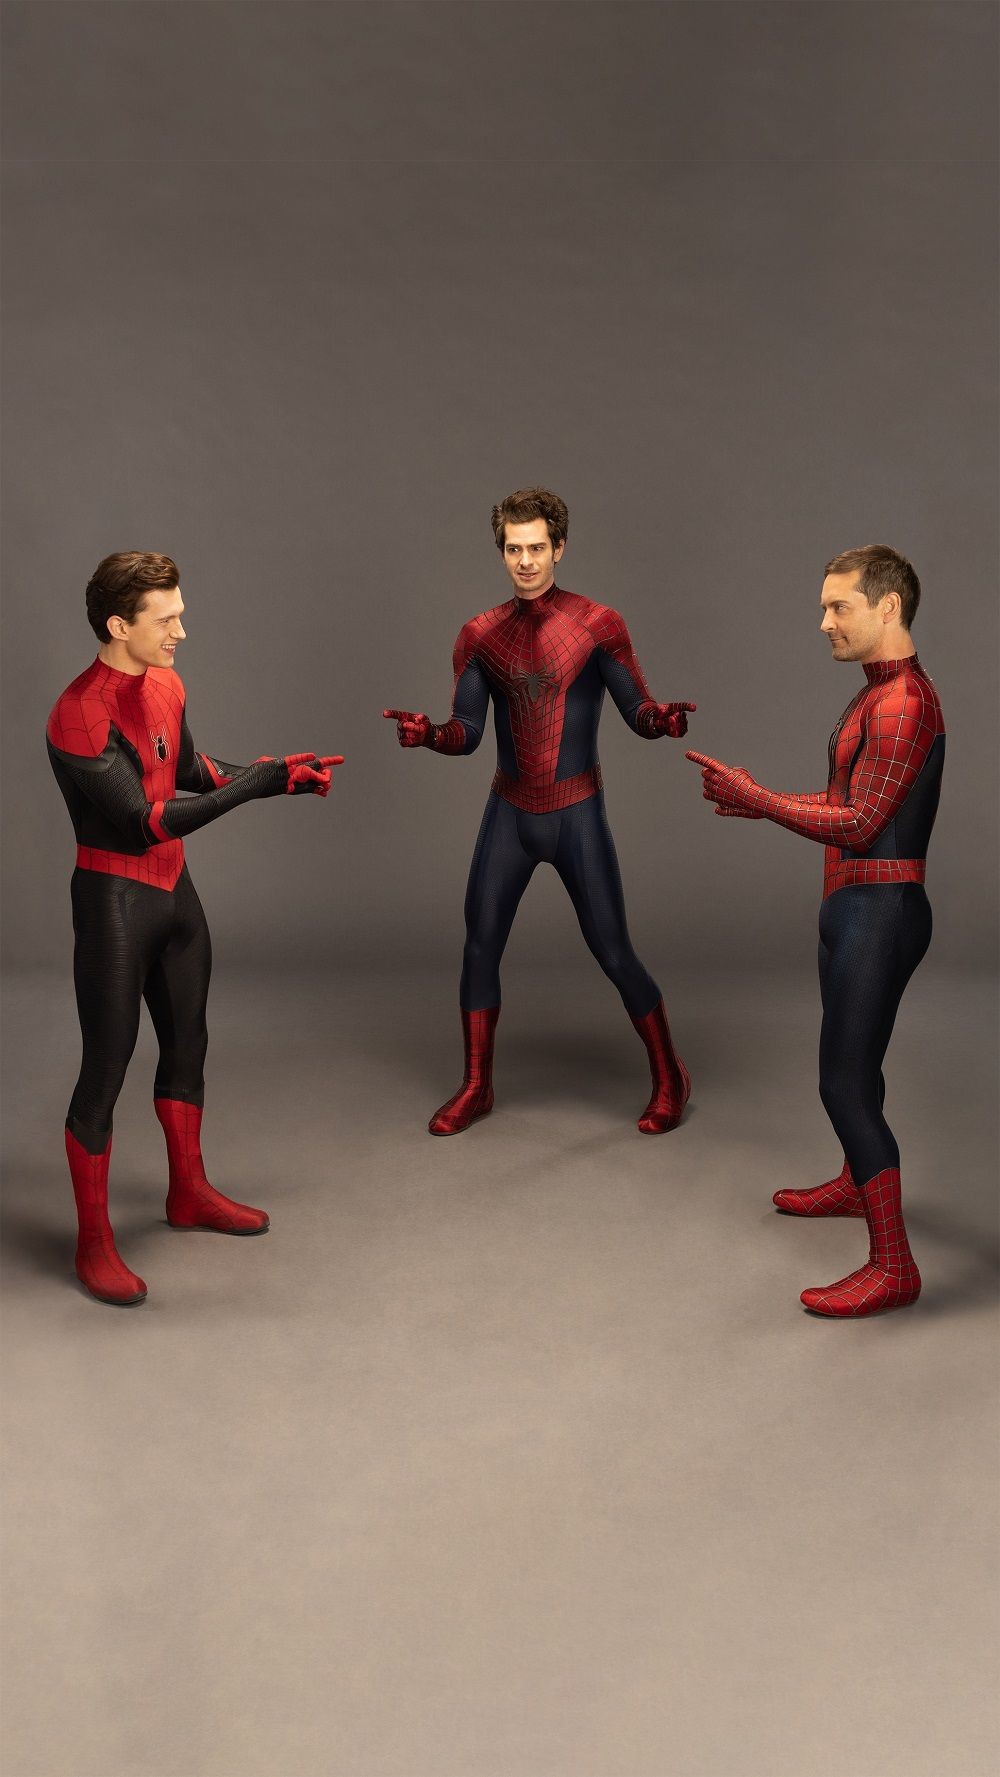 Akun Medsos Film Spider-Man Rilis Foto Kocak 3 Spidey Saling Tunjuk